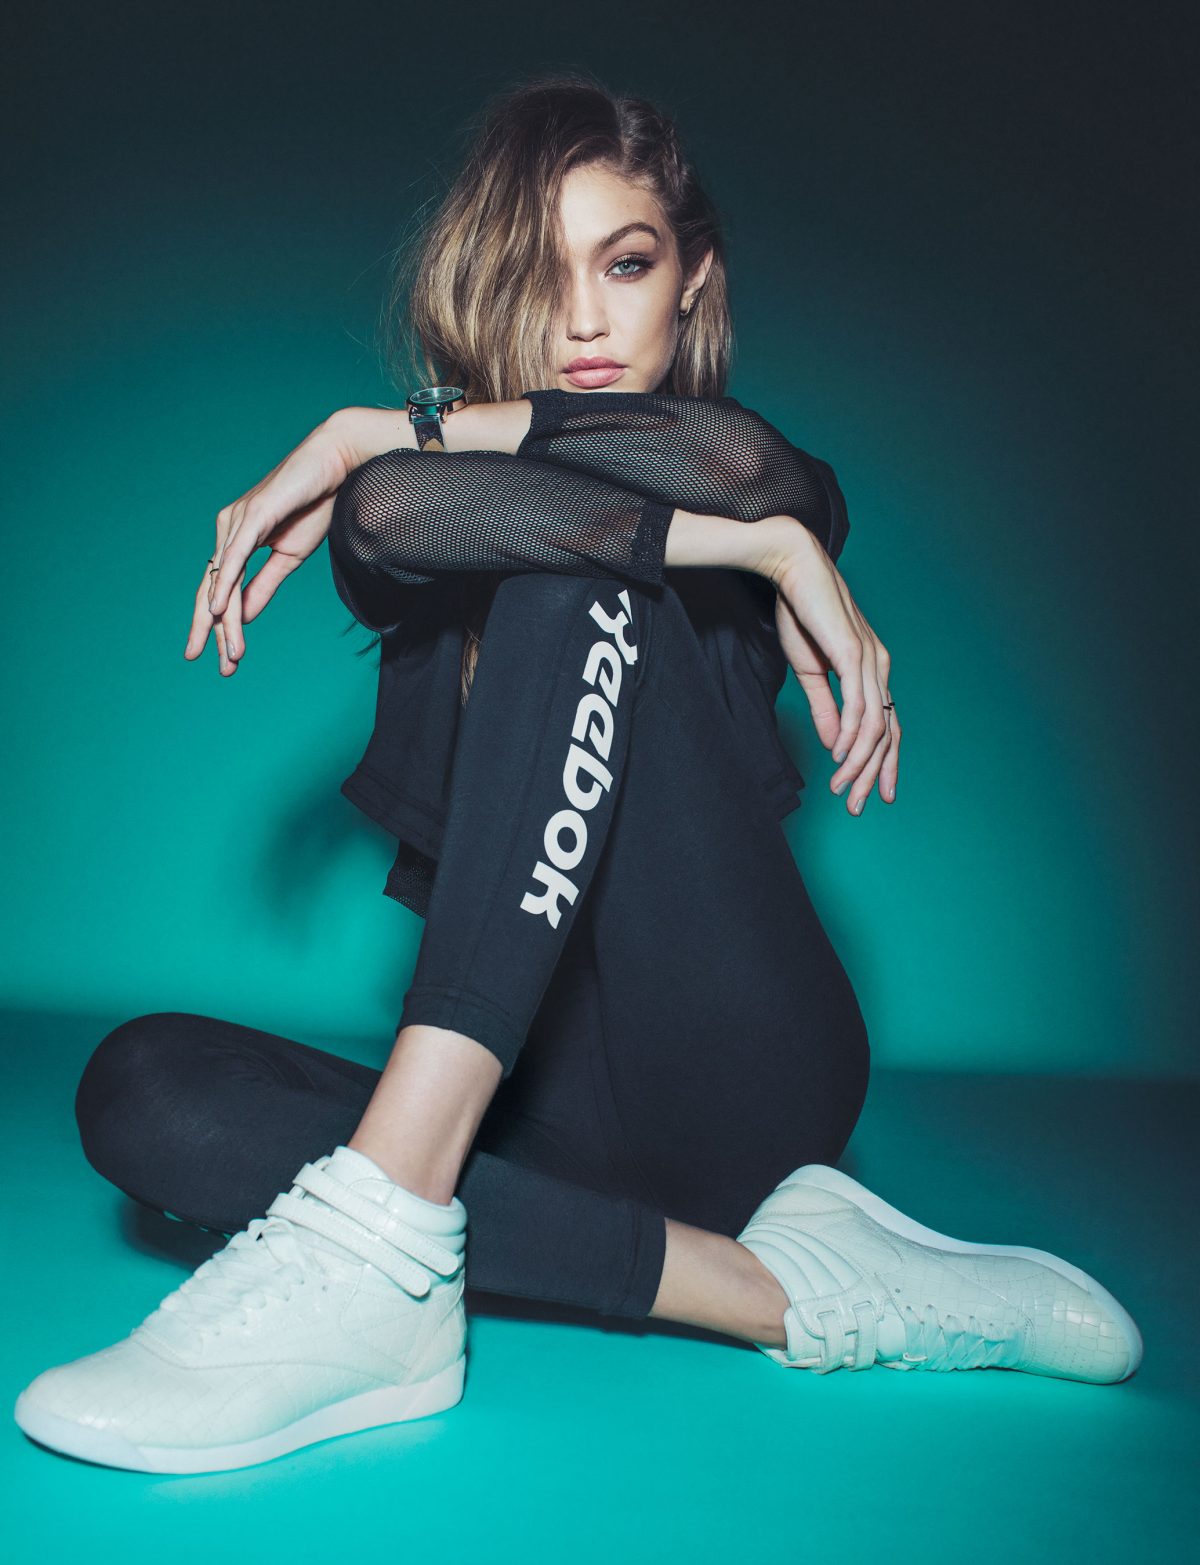 Defilé analoog Gewend Gigi Hadid Stars in Reebok Freestyle Hi Crackle Sneaker Campaign